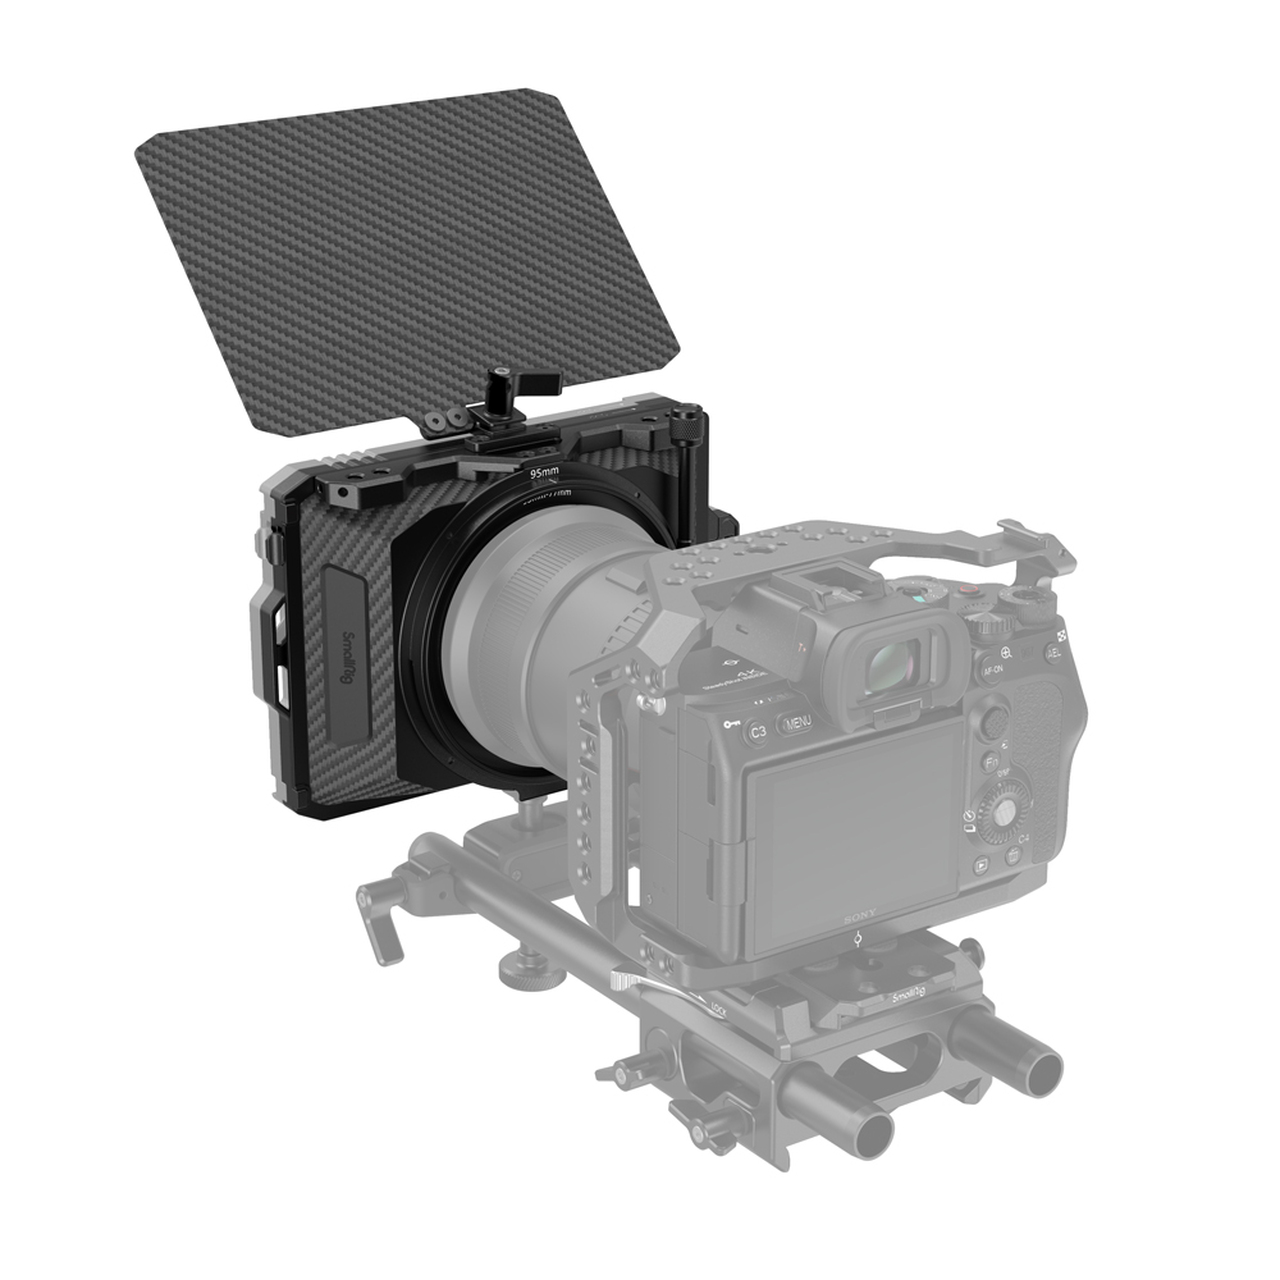 SmallRig Mini Matte Box 3196 แมทบ็อกซ์บังแสงหน้าเลนส์กล้อง ชุดริก ฟิลเตอร์ 4x5.65 ราคา 3190 บาท